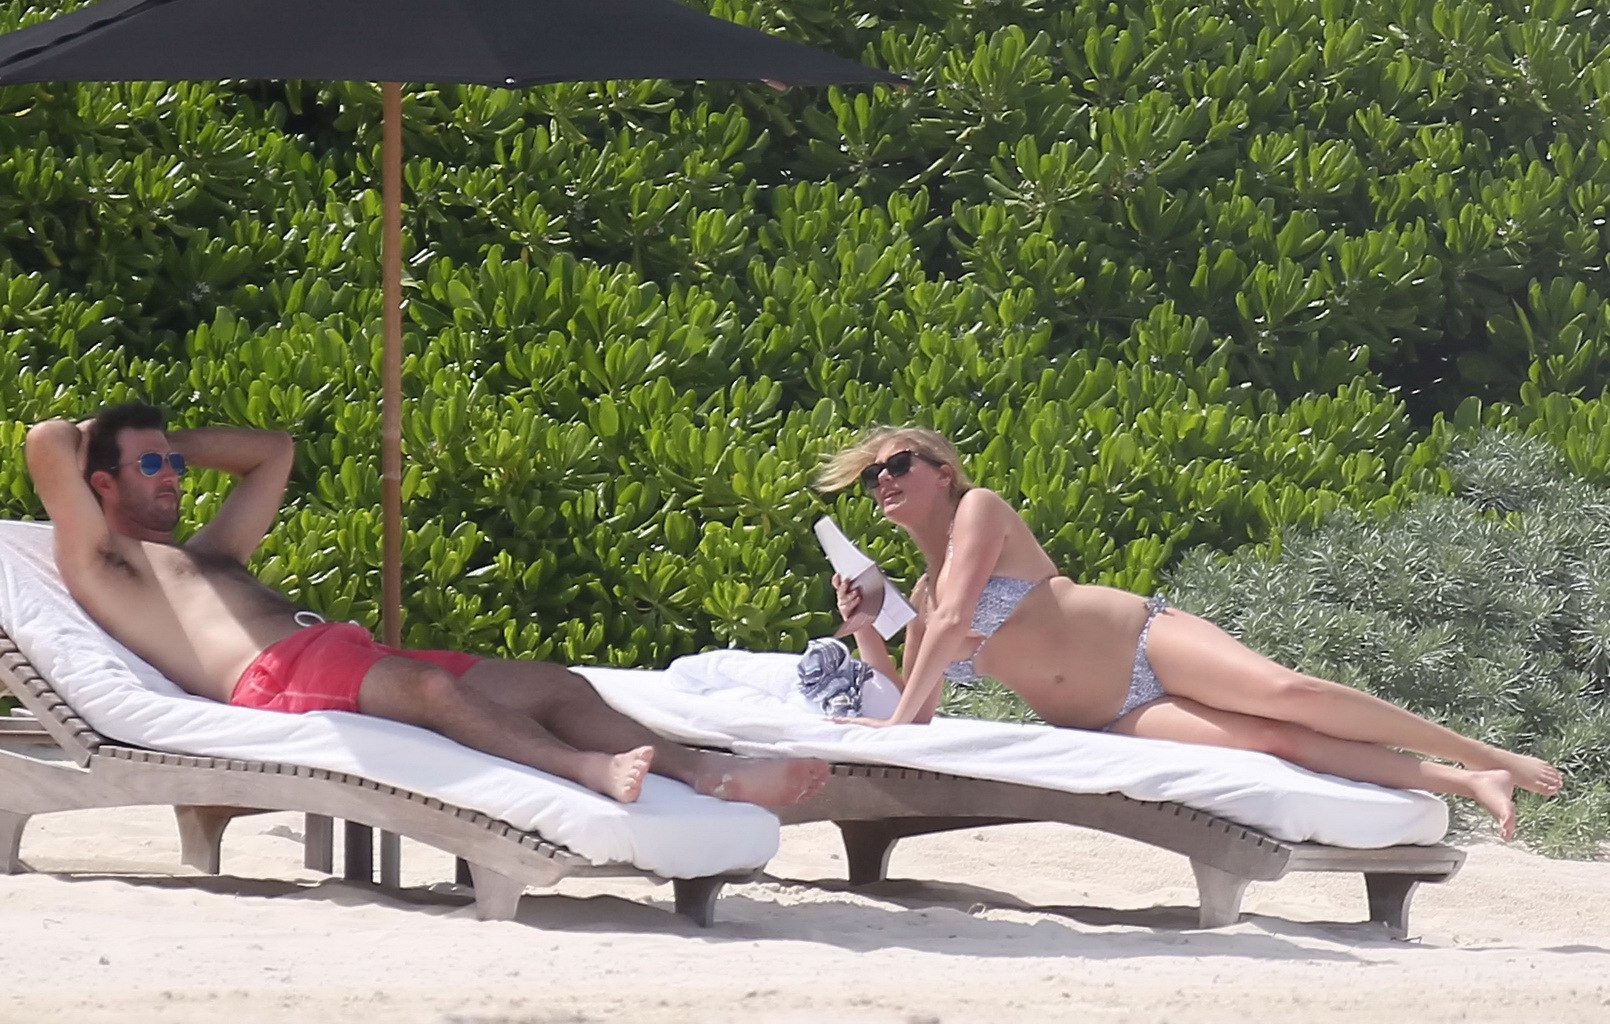 Kate upton bräunt ihre milchigen Melonen und Arsch im silbernen Bikini am Strand in mex
 #75190887